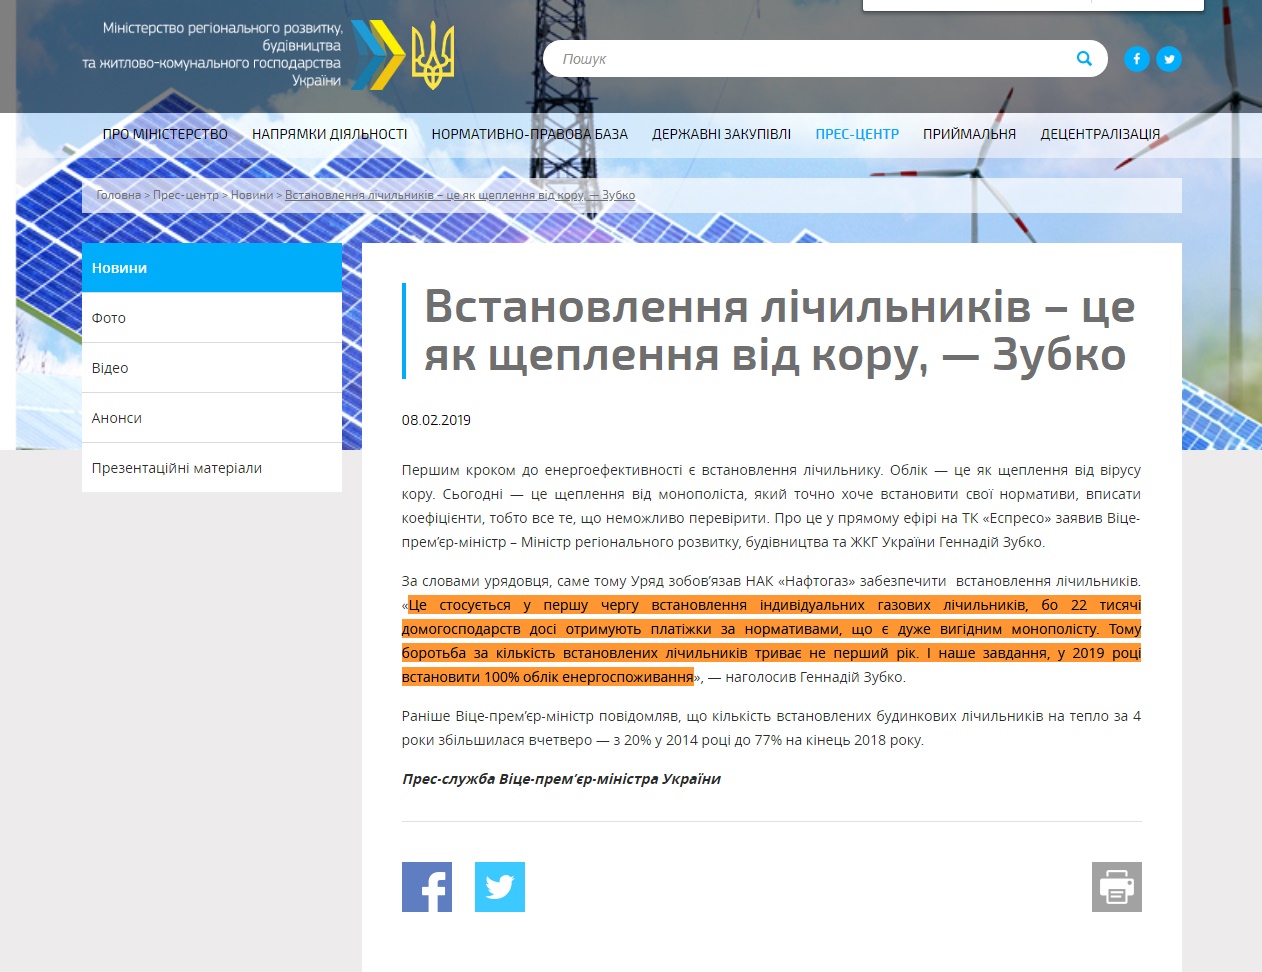 http://www.minregion.gov.ua/press/news/vstanovlennya-lichilnikiv-tse-yak-shheplennya-vid-koru-zubko/